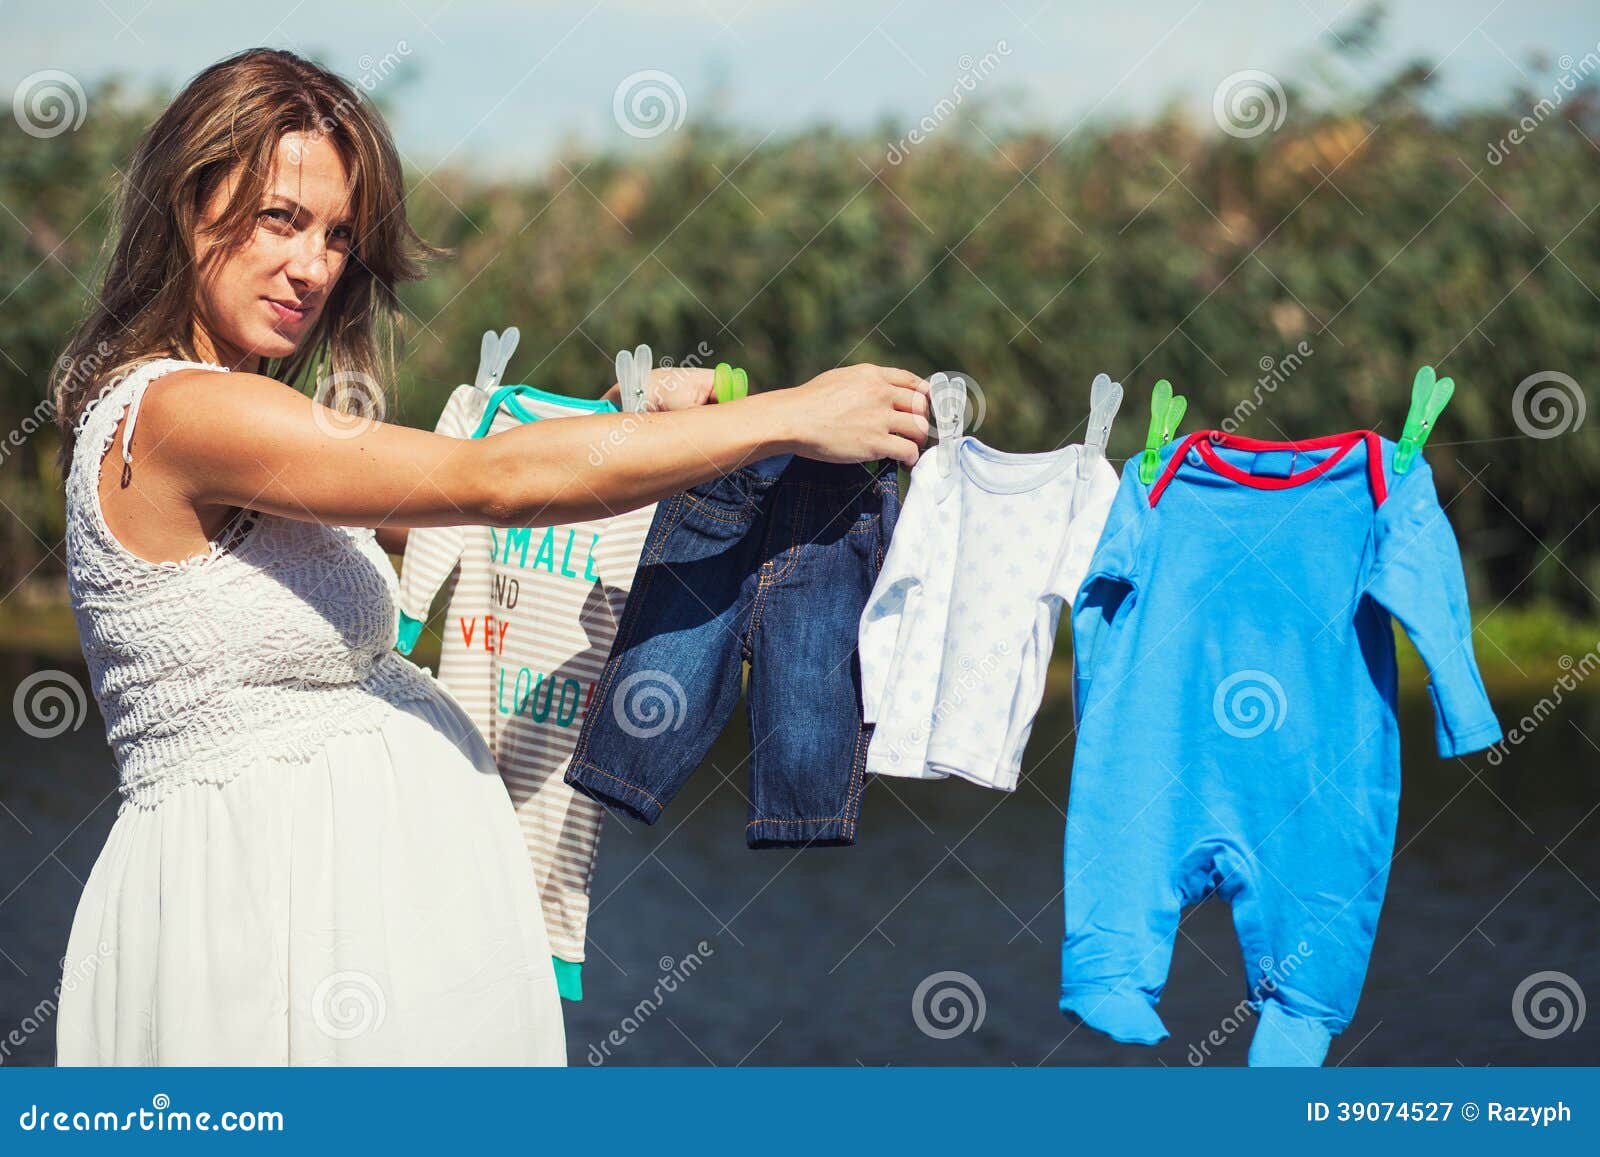 Мать всех вещей. Женщина развешивает одежду. Женщина развешивает белье. Фотосессия вешать белье.